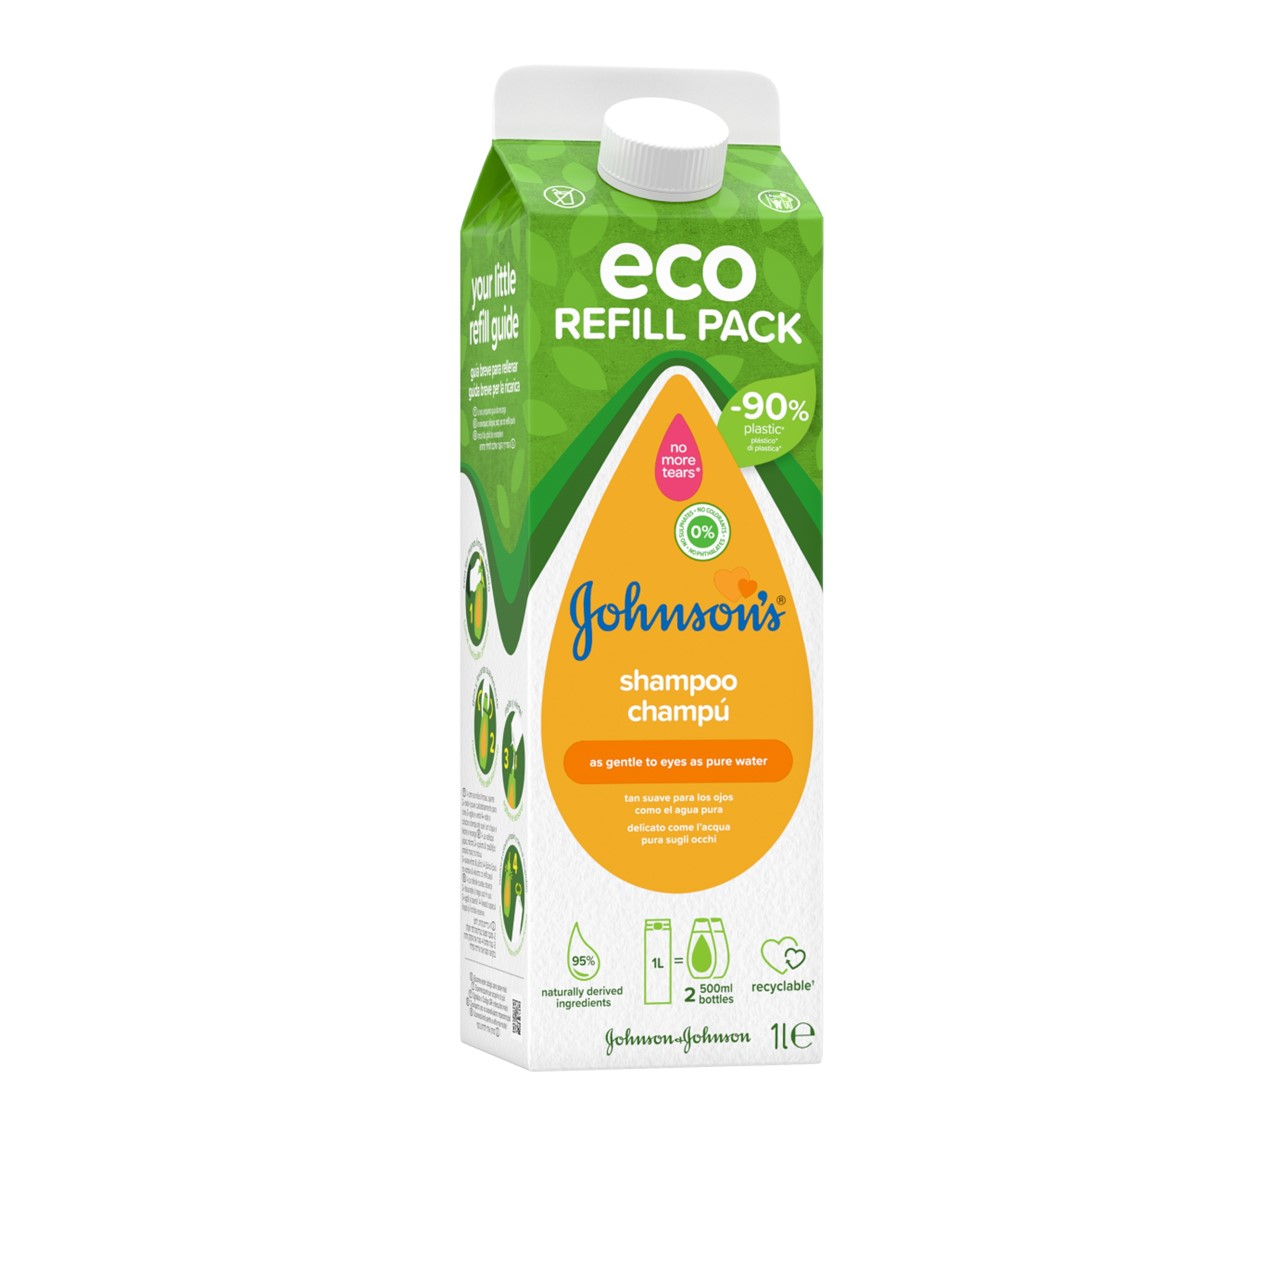 Johnson's Baby Shampoo Eco Refill Pack 1L